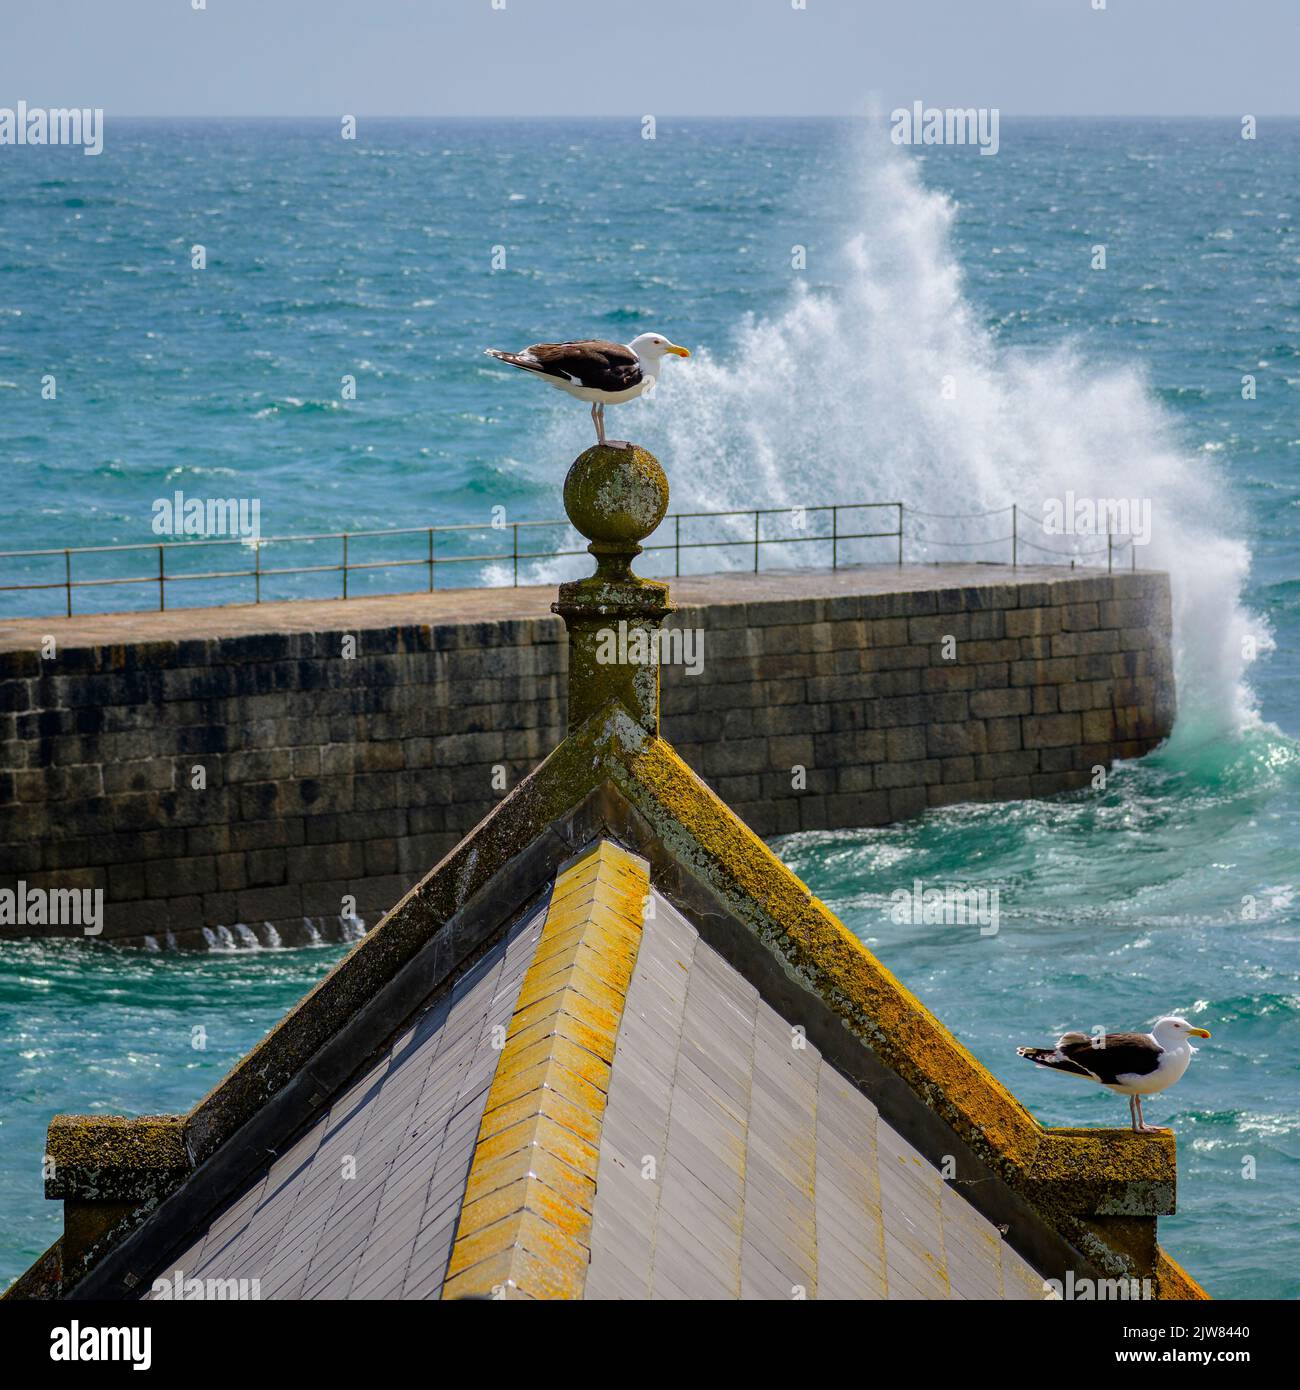 Ich sagte Ihnen, dass es ein großer werden würde!!! Wellen schlagen über Porthleven Pier, während 2 Möwen beobachten. Stockfoto